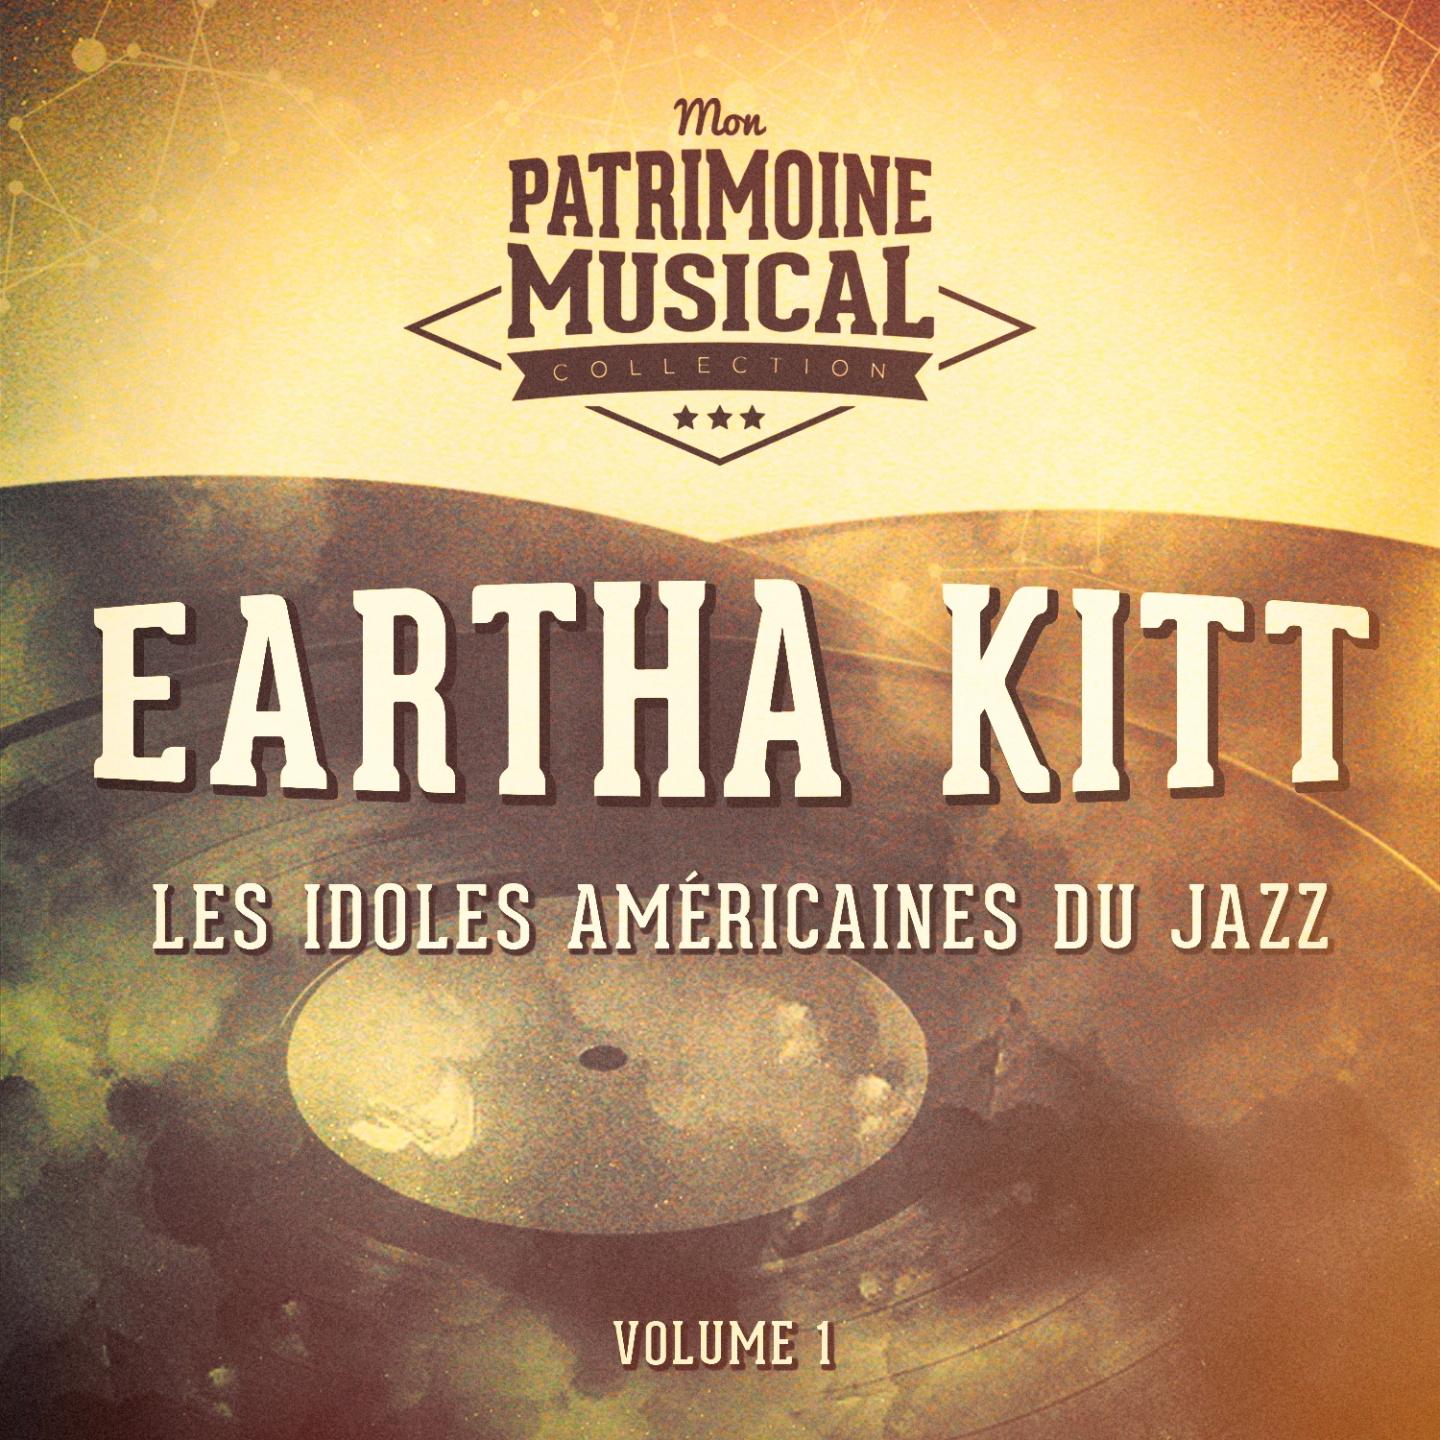 Les Idoles Ame ricaines Du Jazz: Eartha Kitt, Vol. 1